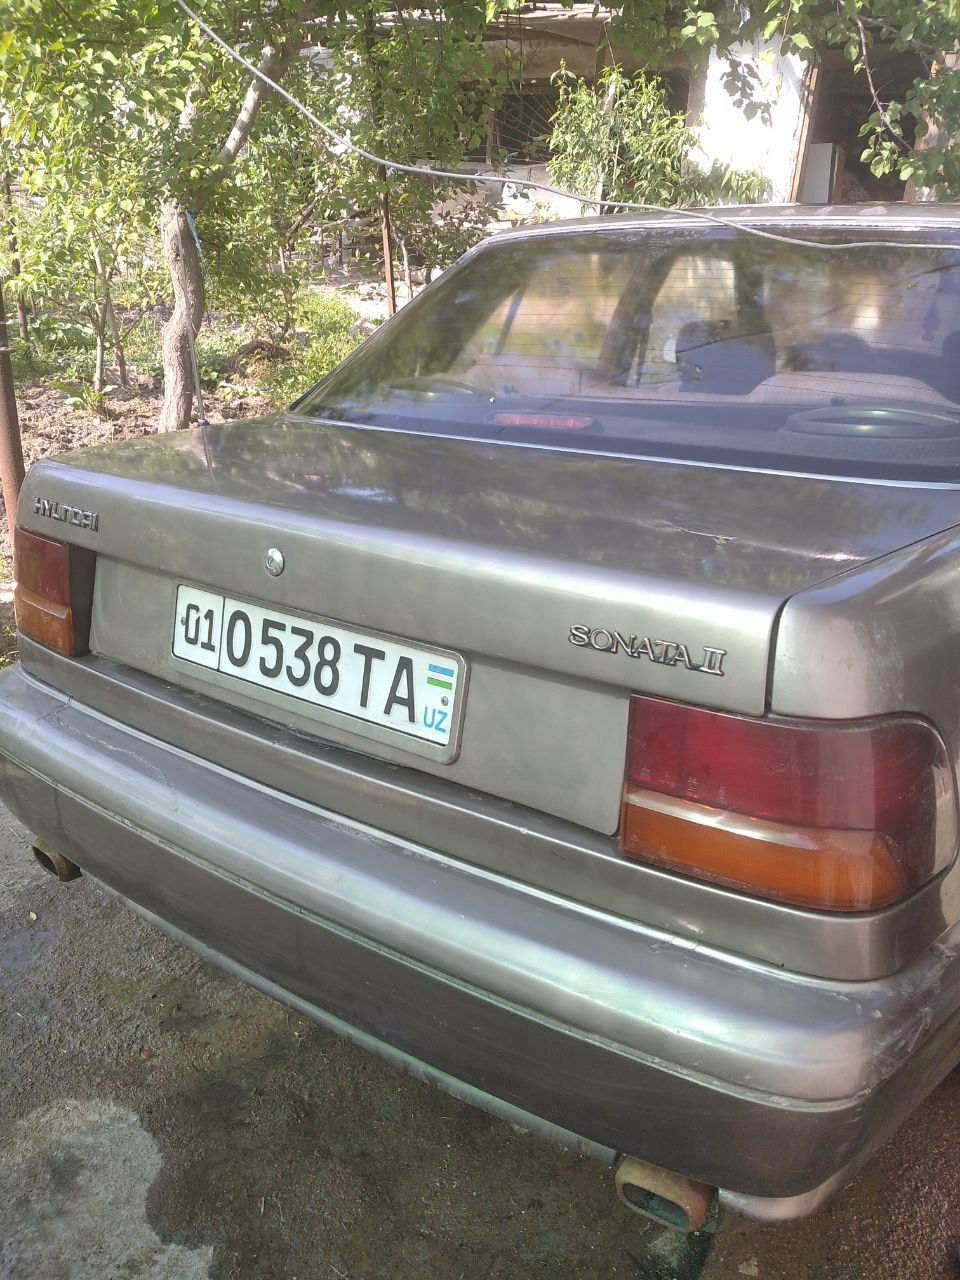 Продается машина Хундай-Соната 2..Цвет бежевый кашемир,1991года.Двигат